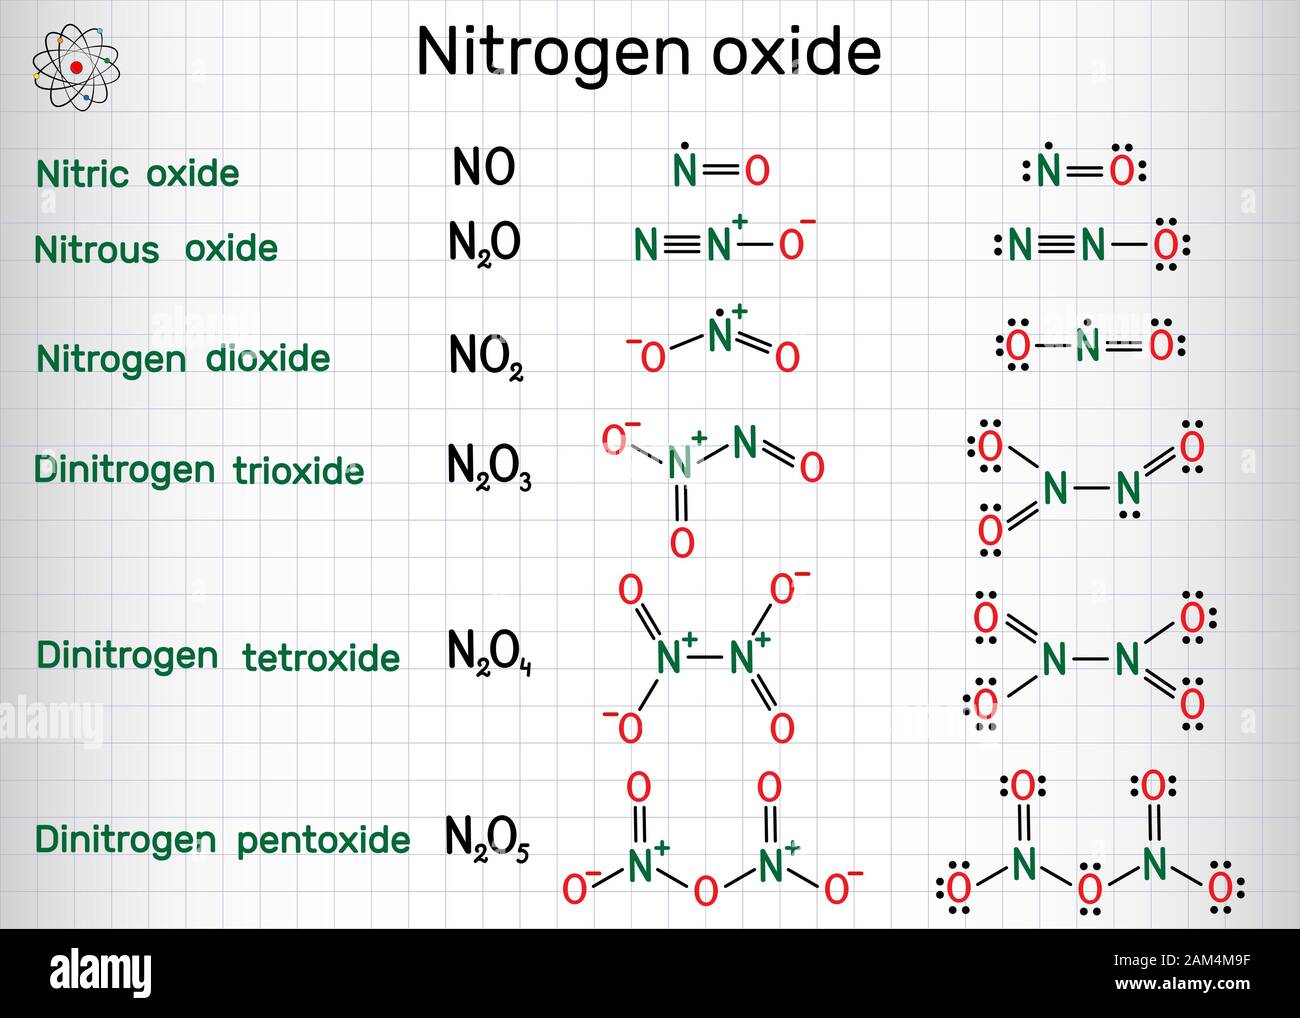 Chemical formulas of nitrogen oxide: nitric oxide NO, nitrogen